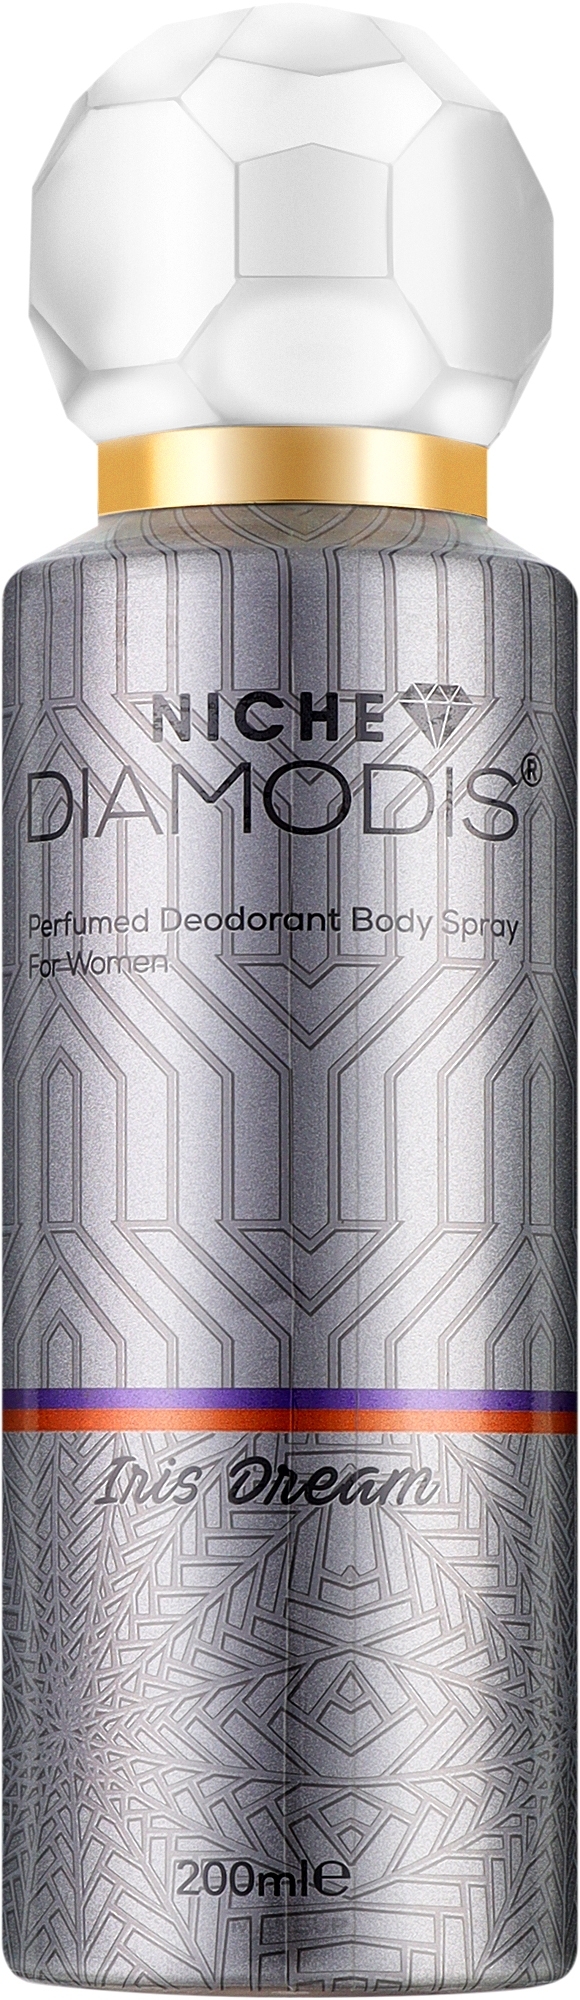 Нишевый дезодорант для тела - Niche Diamodis Iris Dream Perfumed Deodorant Body Spray — фото 200ml